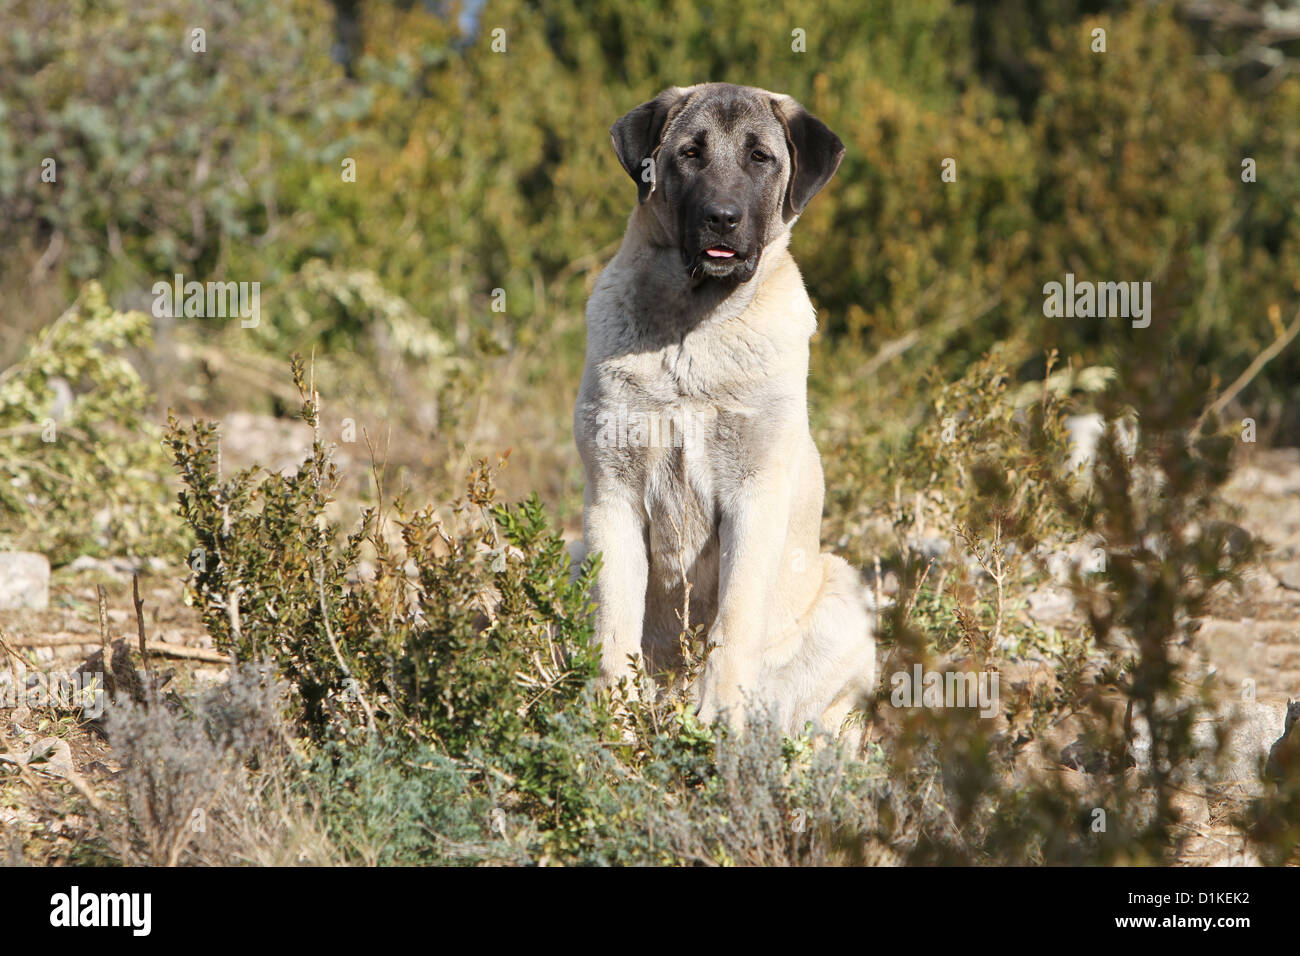 Dog Anatolian Shepherd dog / Kangal / Turkish Karabash adult sitting Stock Photo